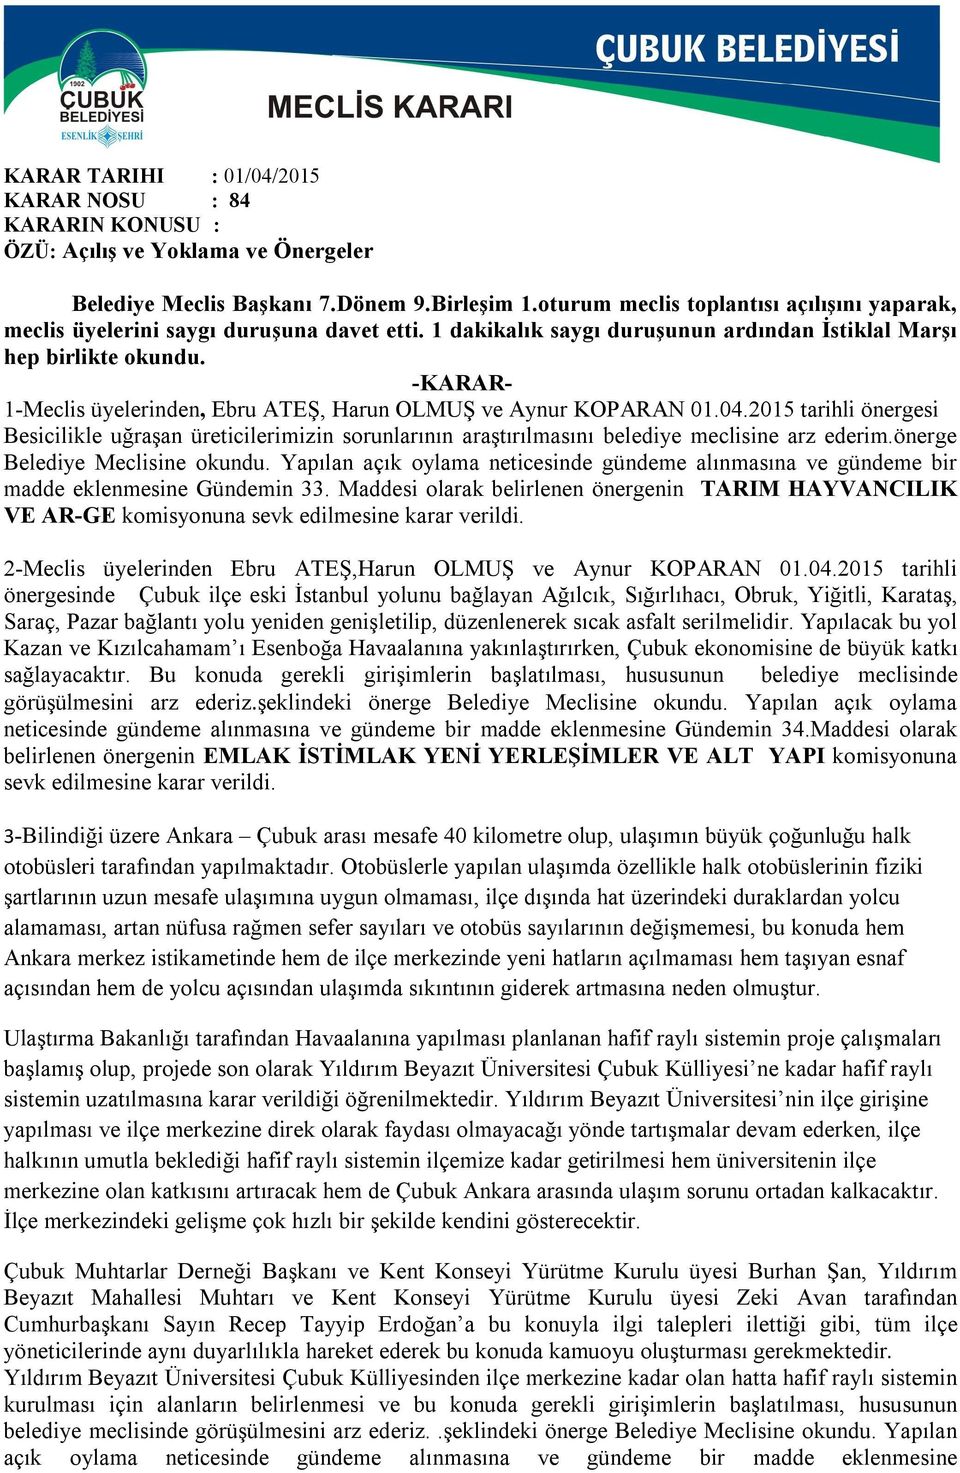 1-Meclis üyelerinden, Ebru ATEŞ, Harun OLMUŞ ve Aynur KOPARAN 01.04.2015 tarihli önergesi Besicilikle uğraşan üreticilerimizin sorunlarının araştırılmasını belediye meclisine arz ederim.